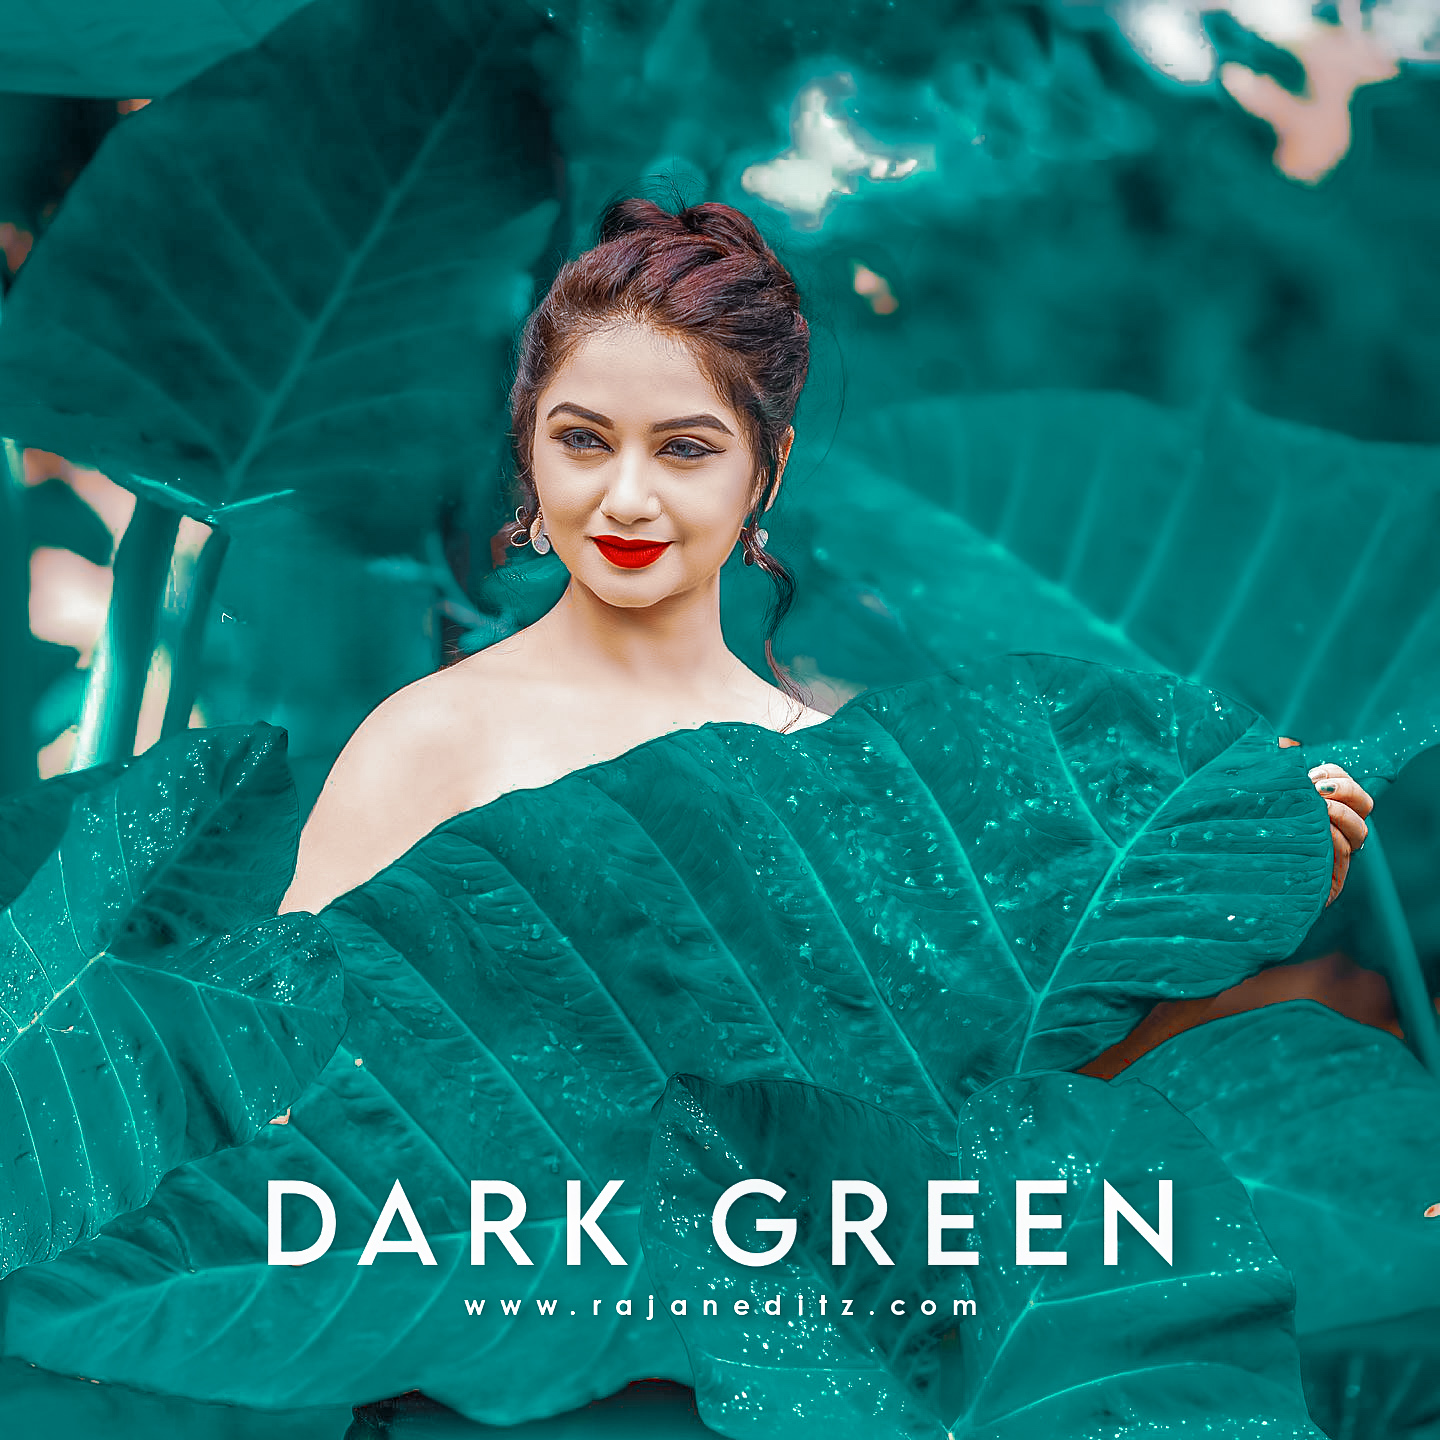 Dark Green Lightroom Preset Free Download